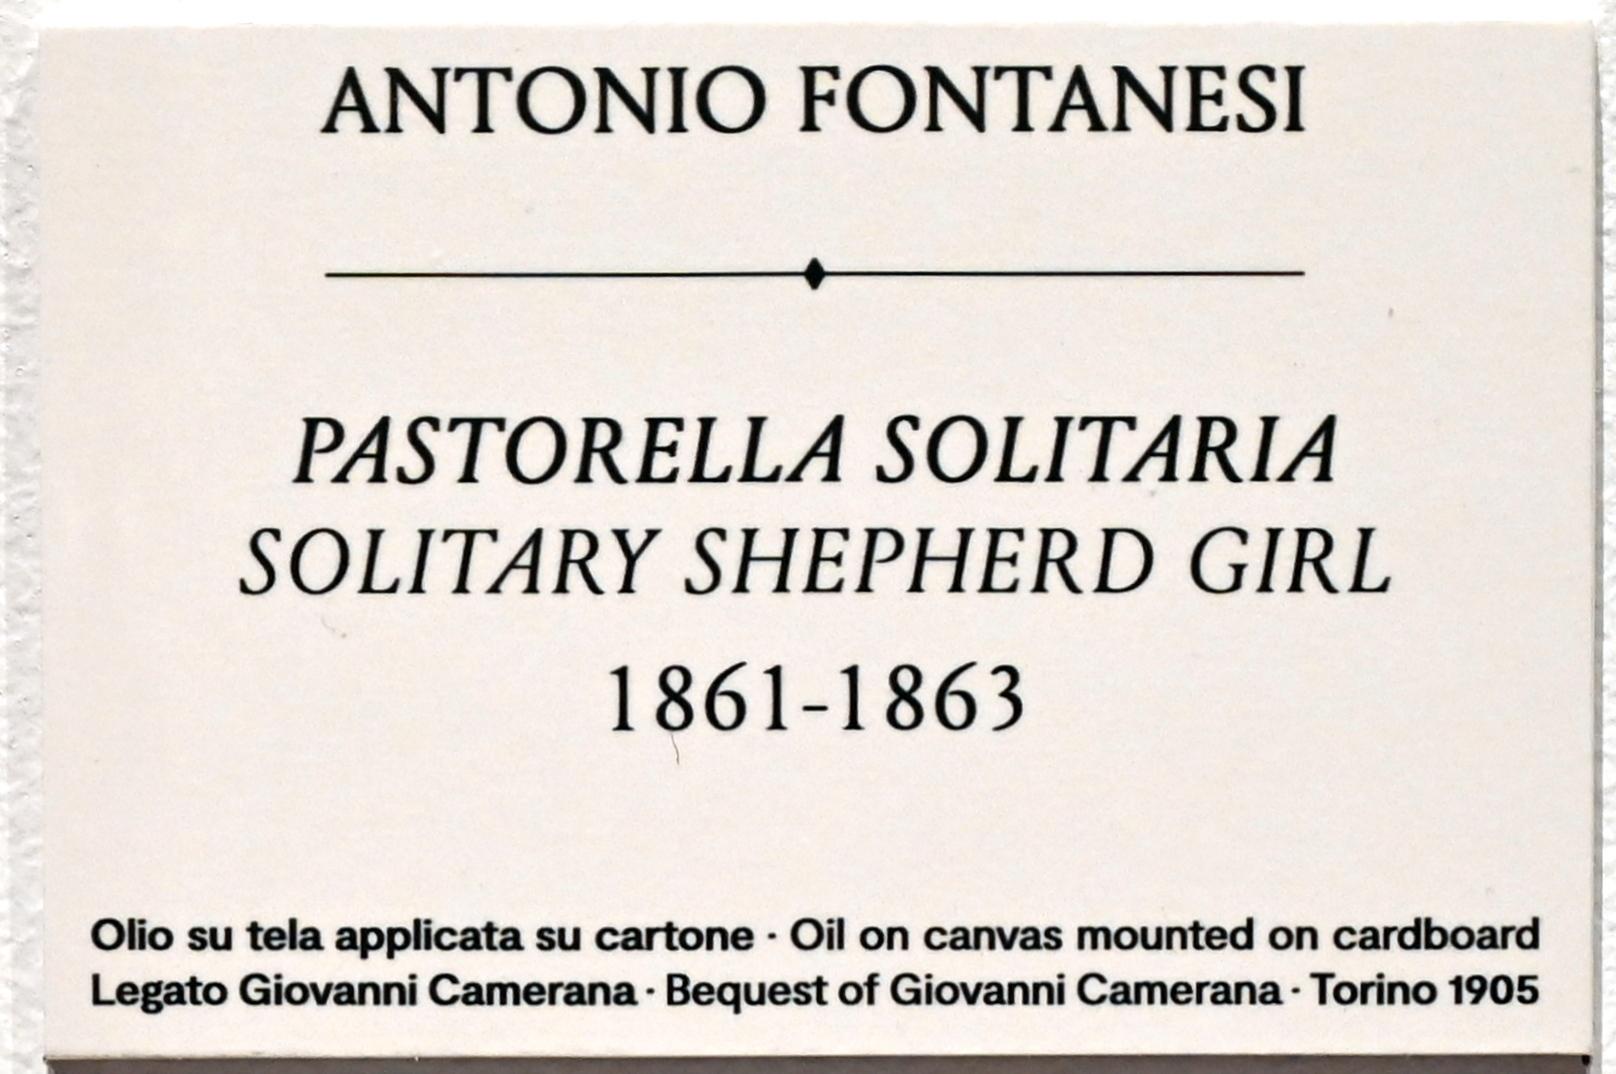 Antonio Fontanesi: Einsame Hirtin, 1861 - 1863, Bild 2/2